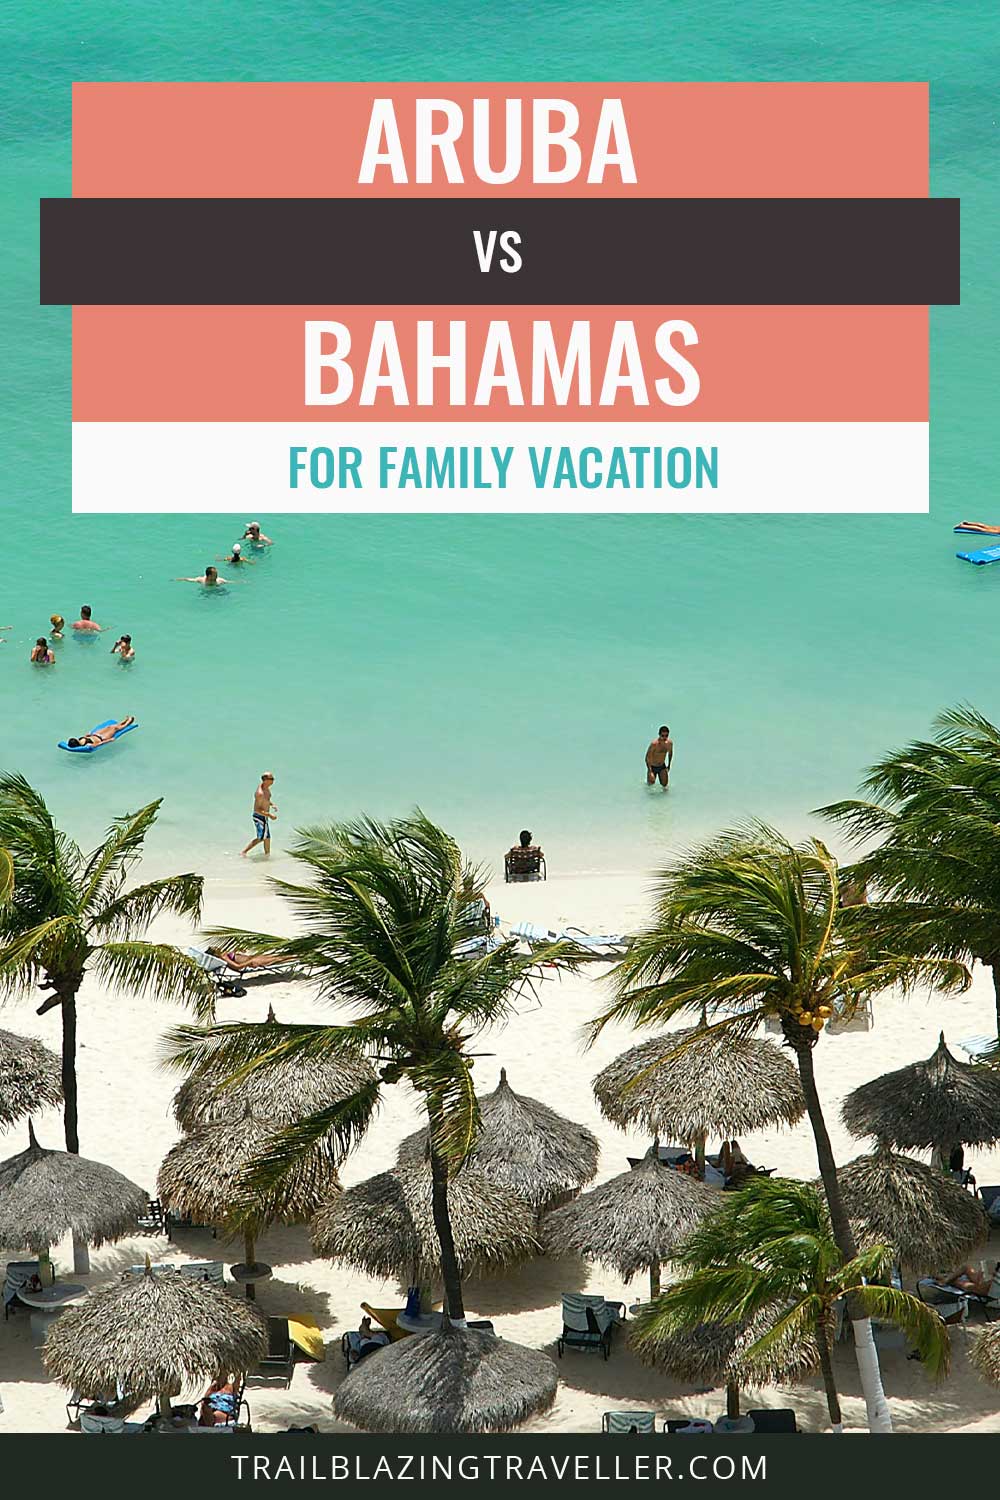 Aruba vs. Bahamas for Family Vacation